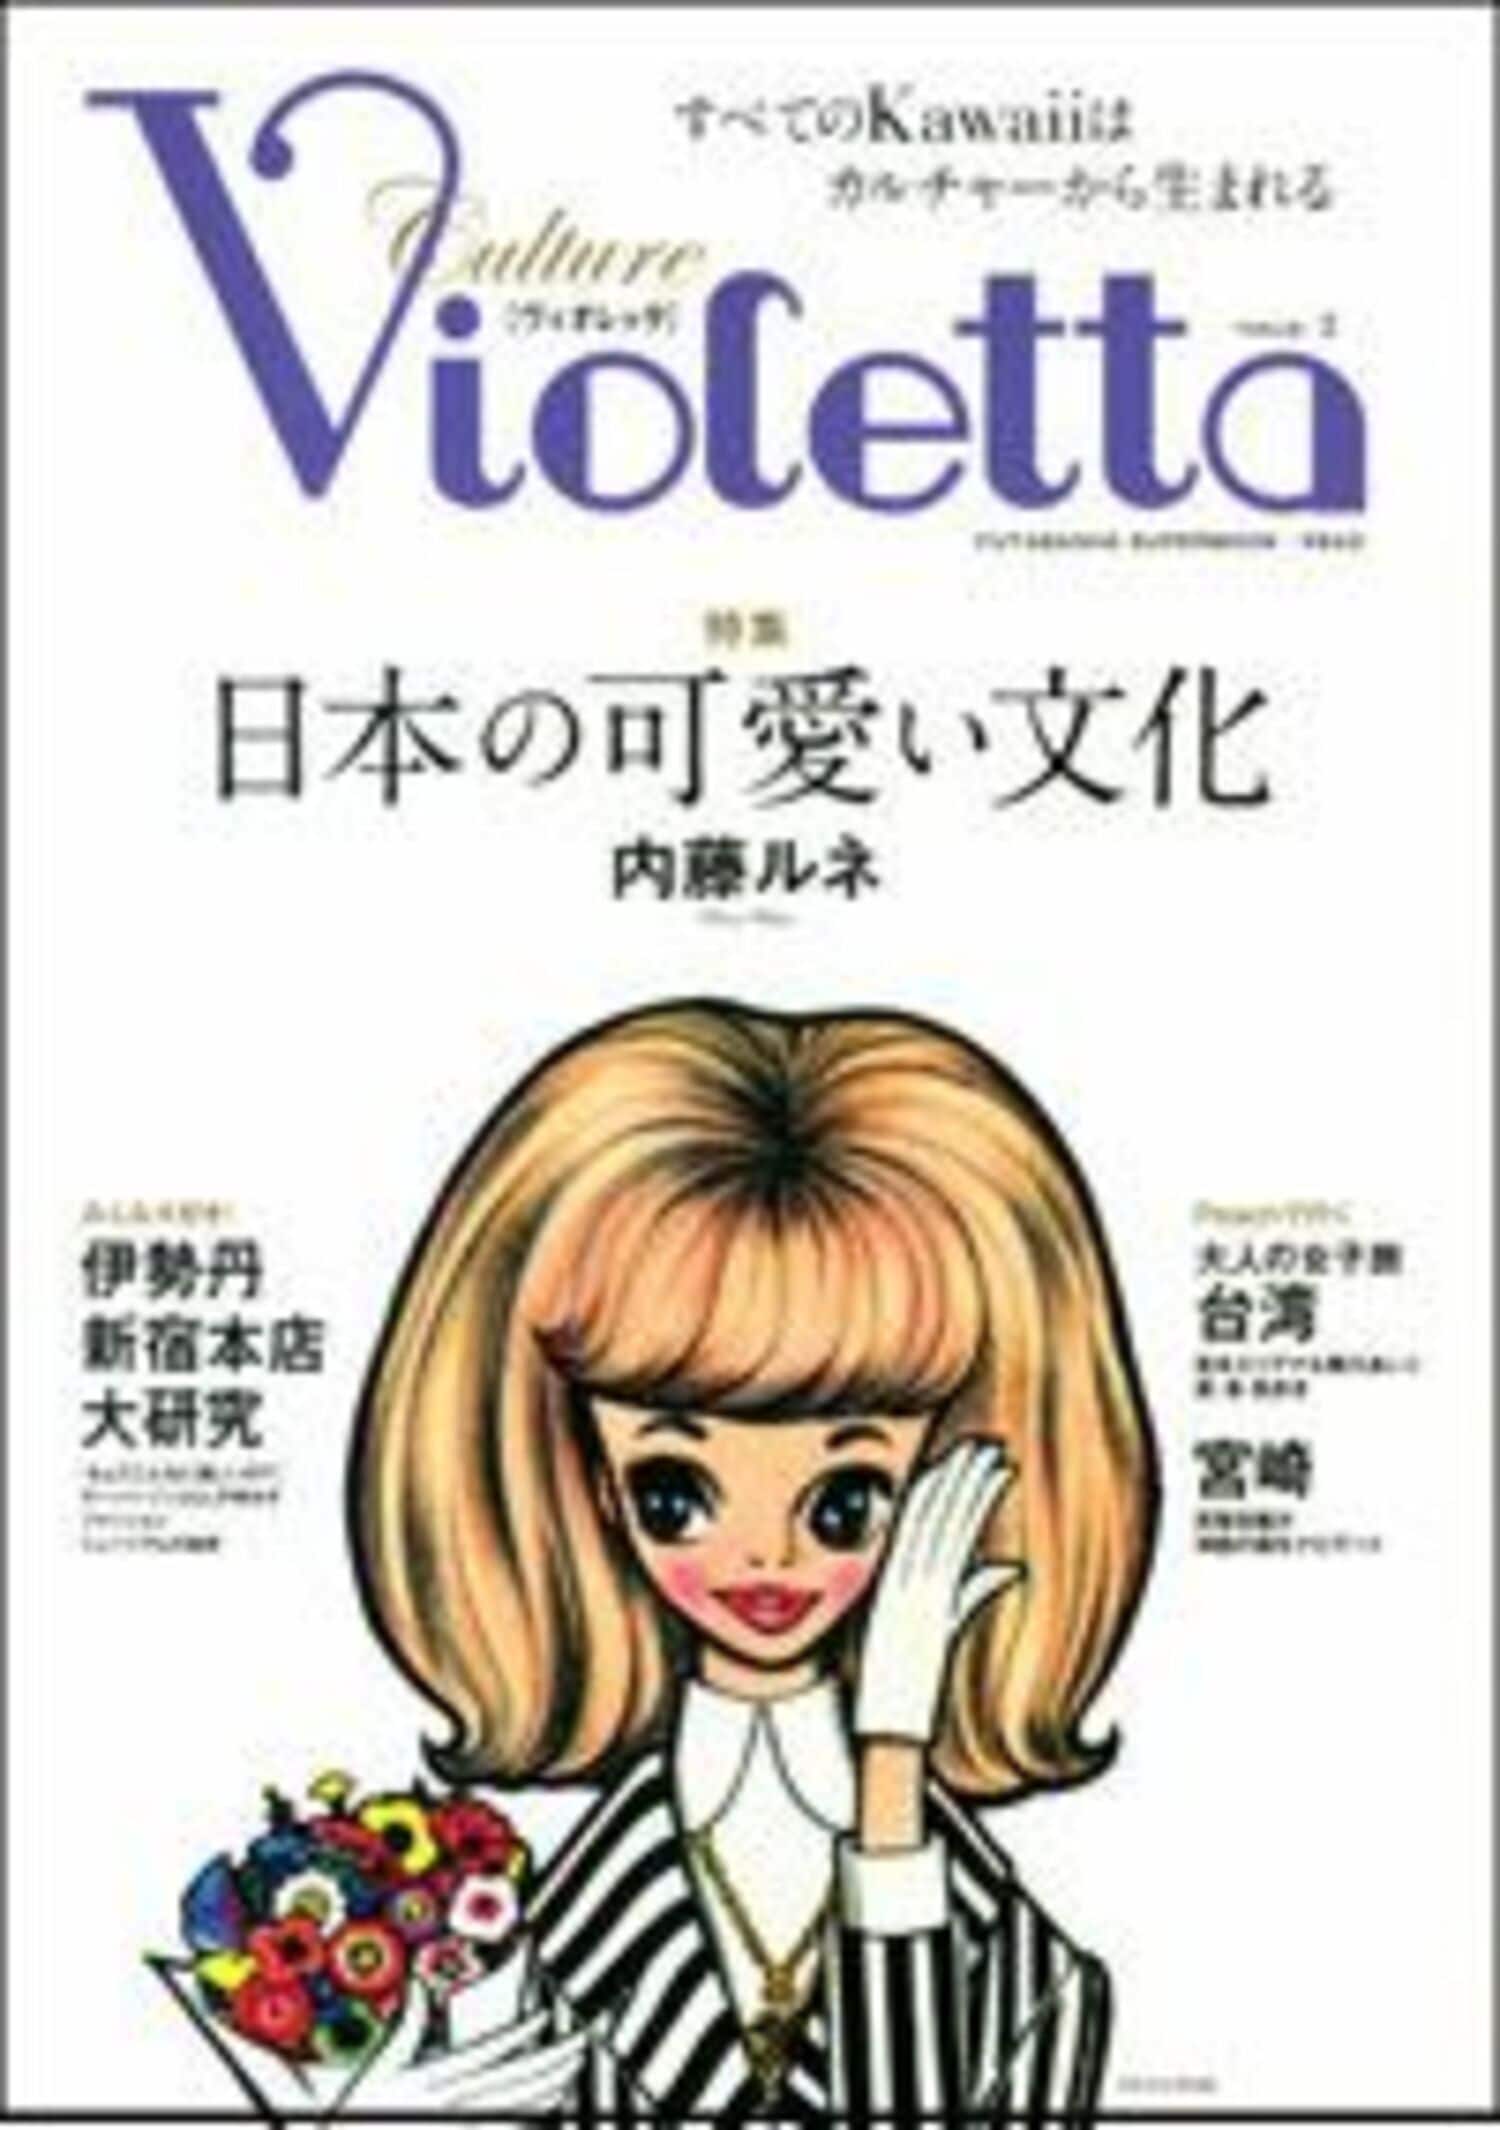 伊勢丹新宿本店で大規模の展示会！  女性カルチャー誌「Violetta」×「内藤ルネ」に注目！の画像